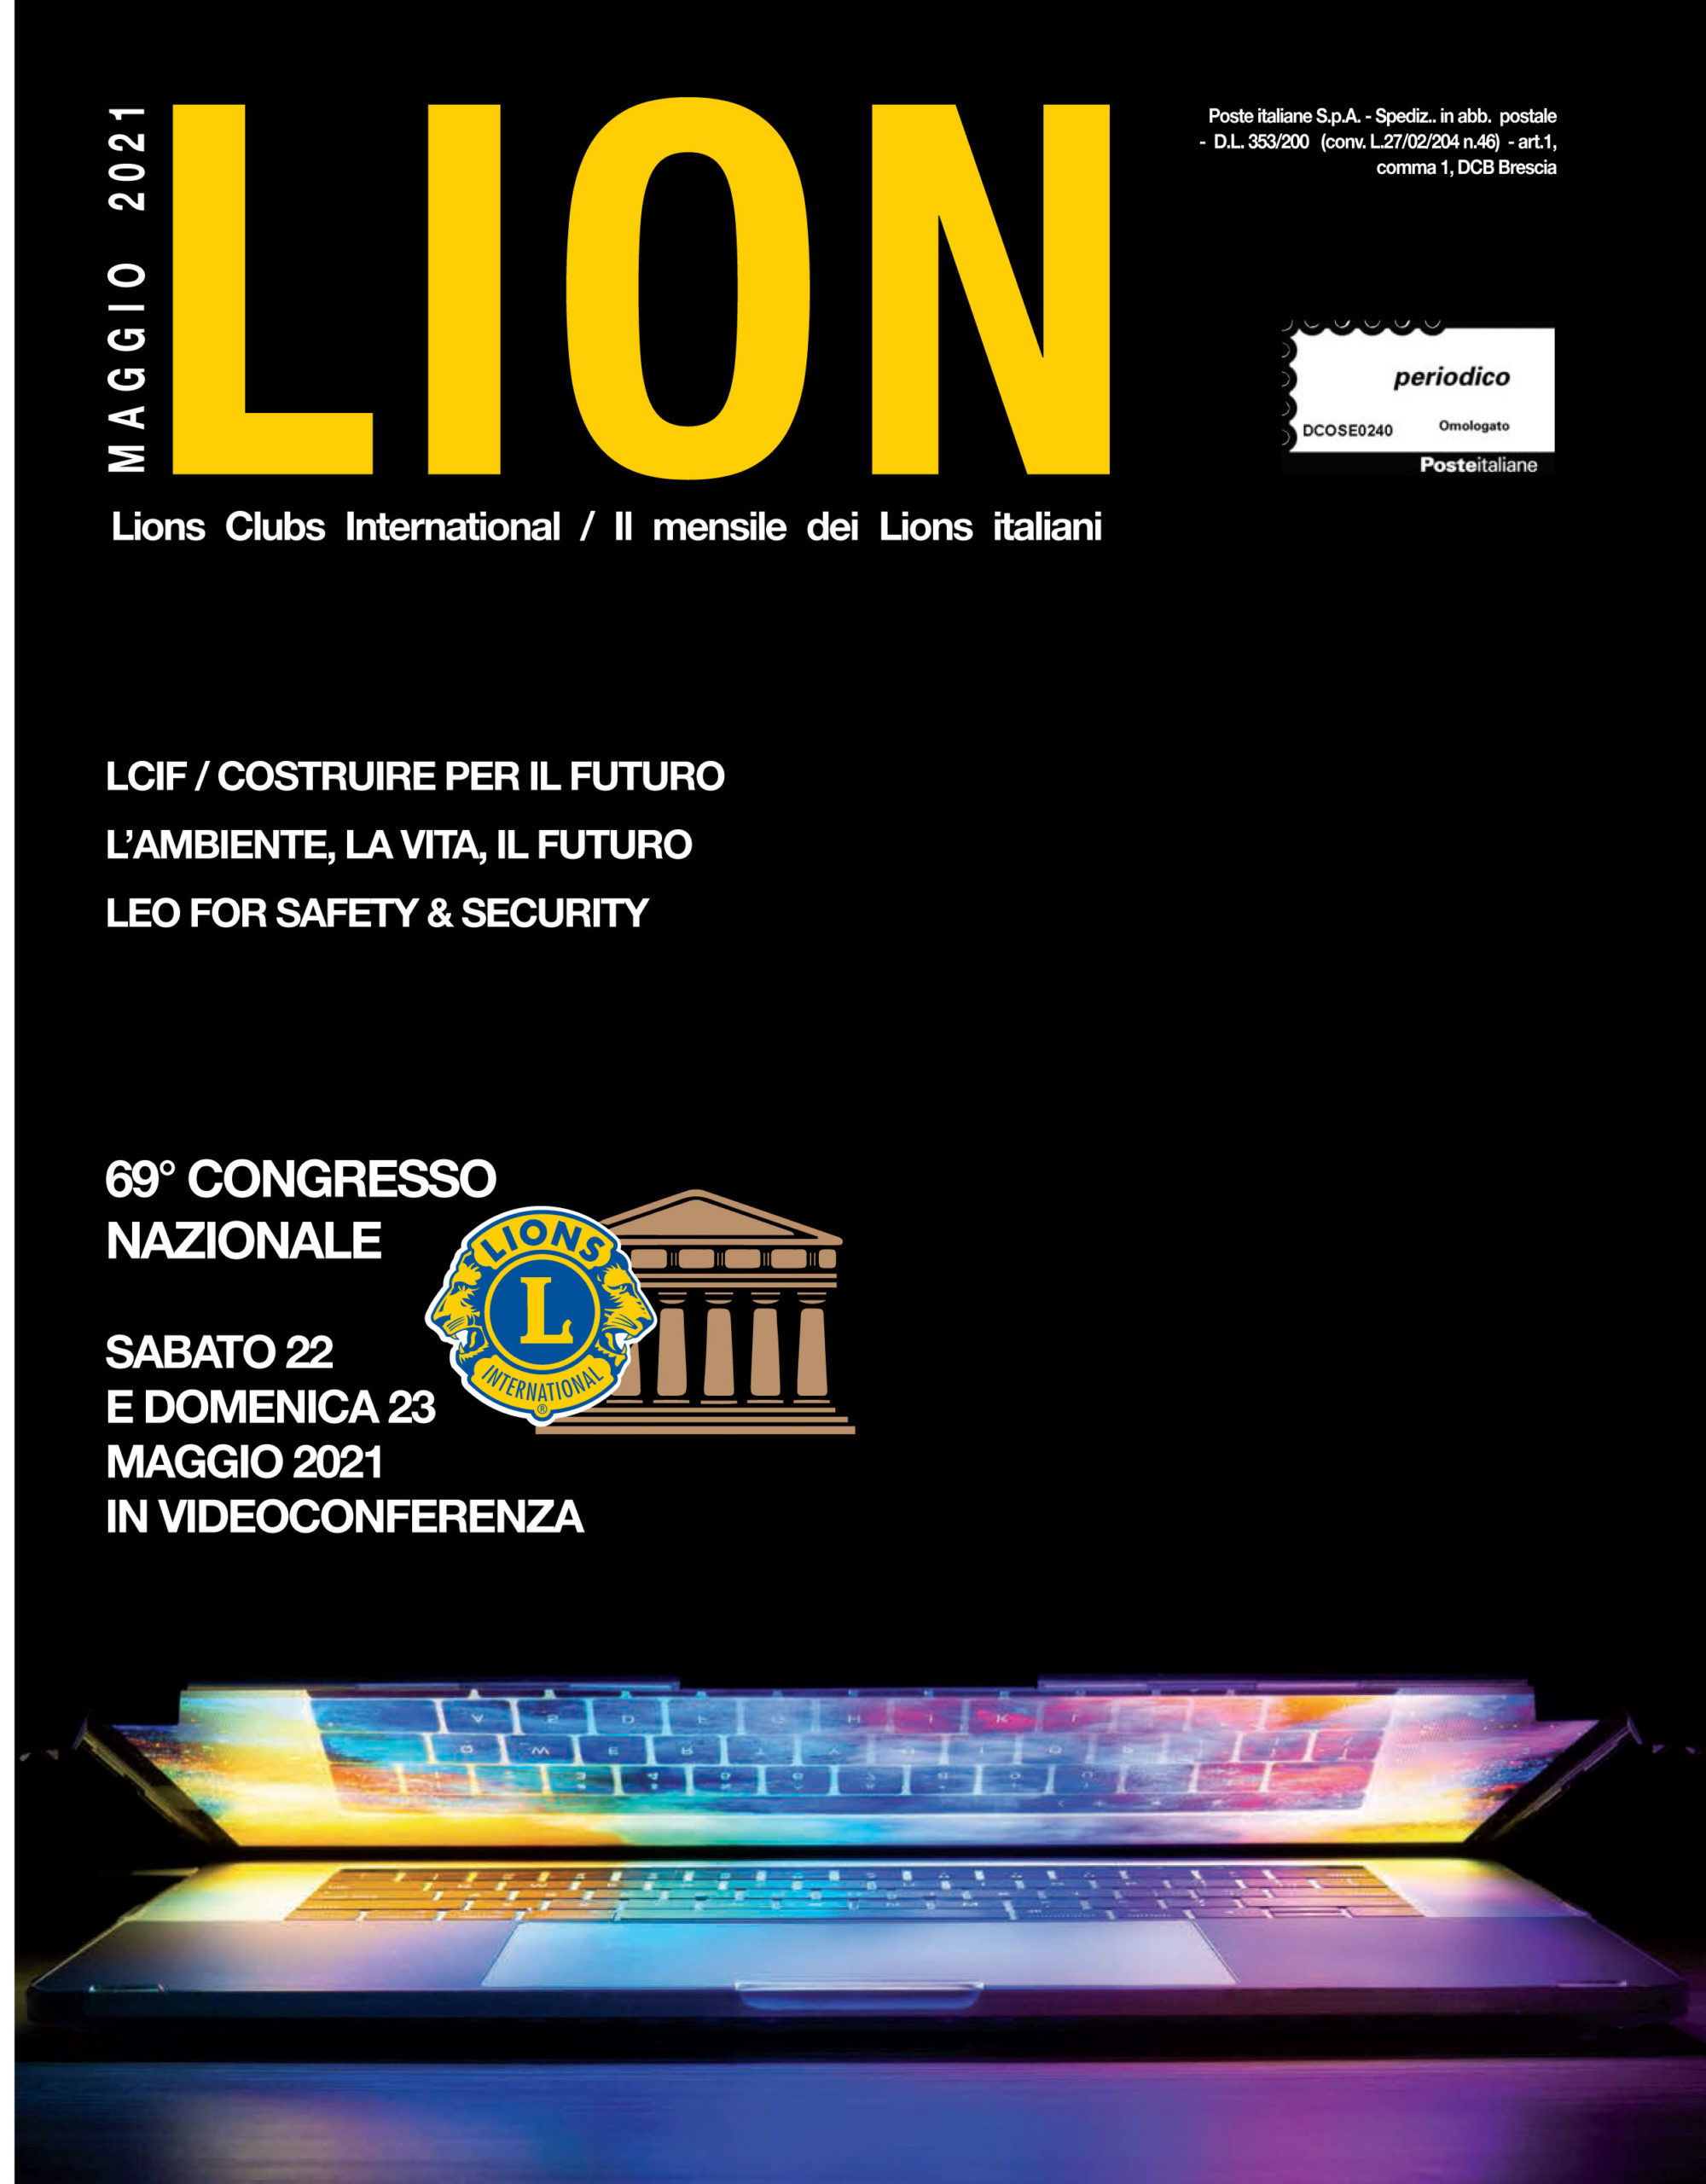 LION MAGGIO 2021